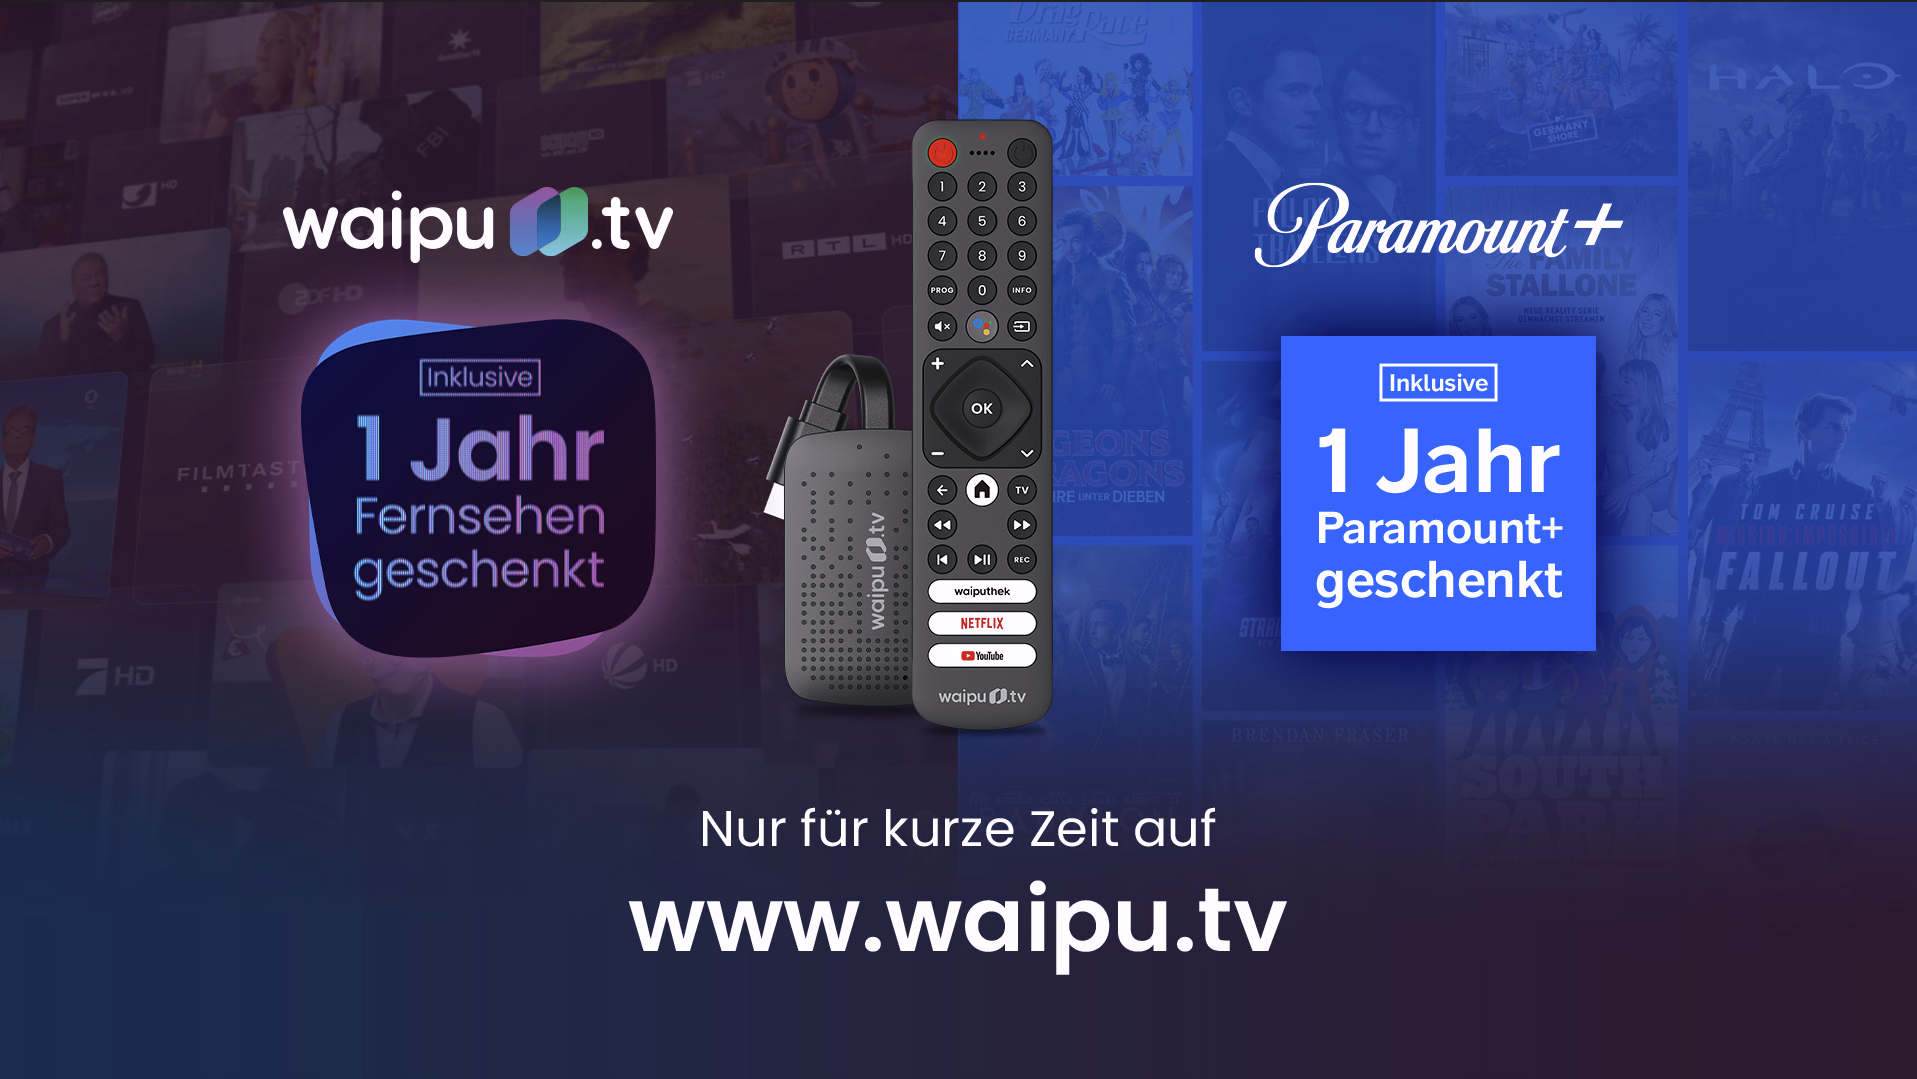 Waipu Aktion: Waipu.tv Perfect Plus mit gratis Paramount+